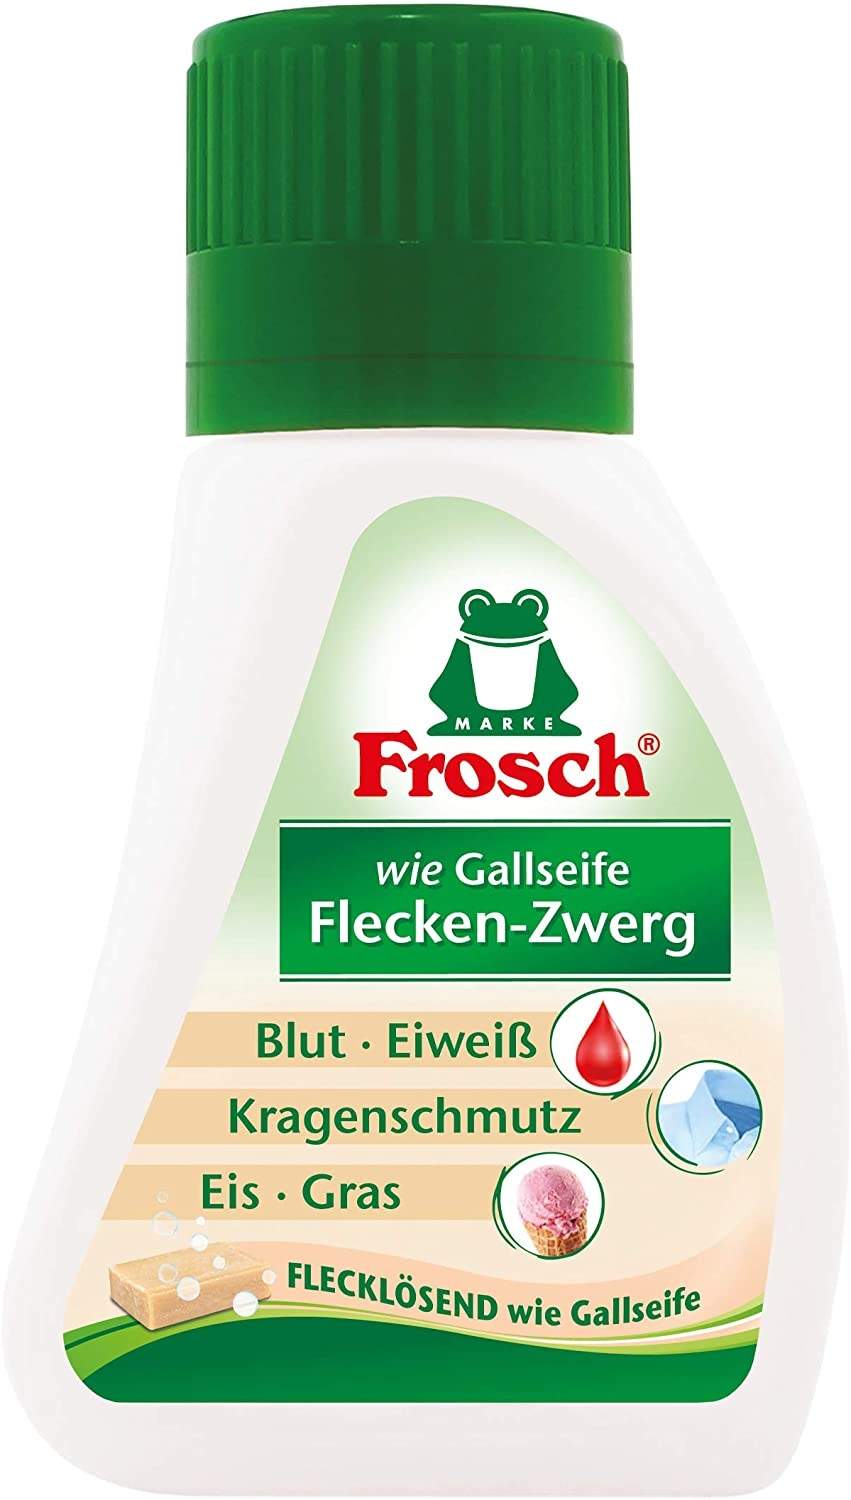 Frosch Flecken-Zwerg wie Gallseife 75 ml Test: ❤️ TOP Angebote ab 1,95 €  (Mai 2022) Testbericht.de